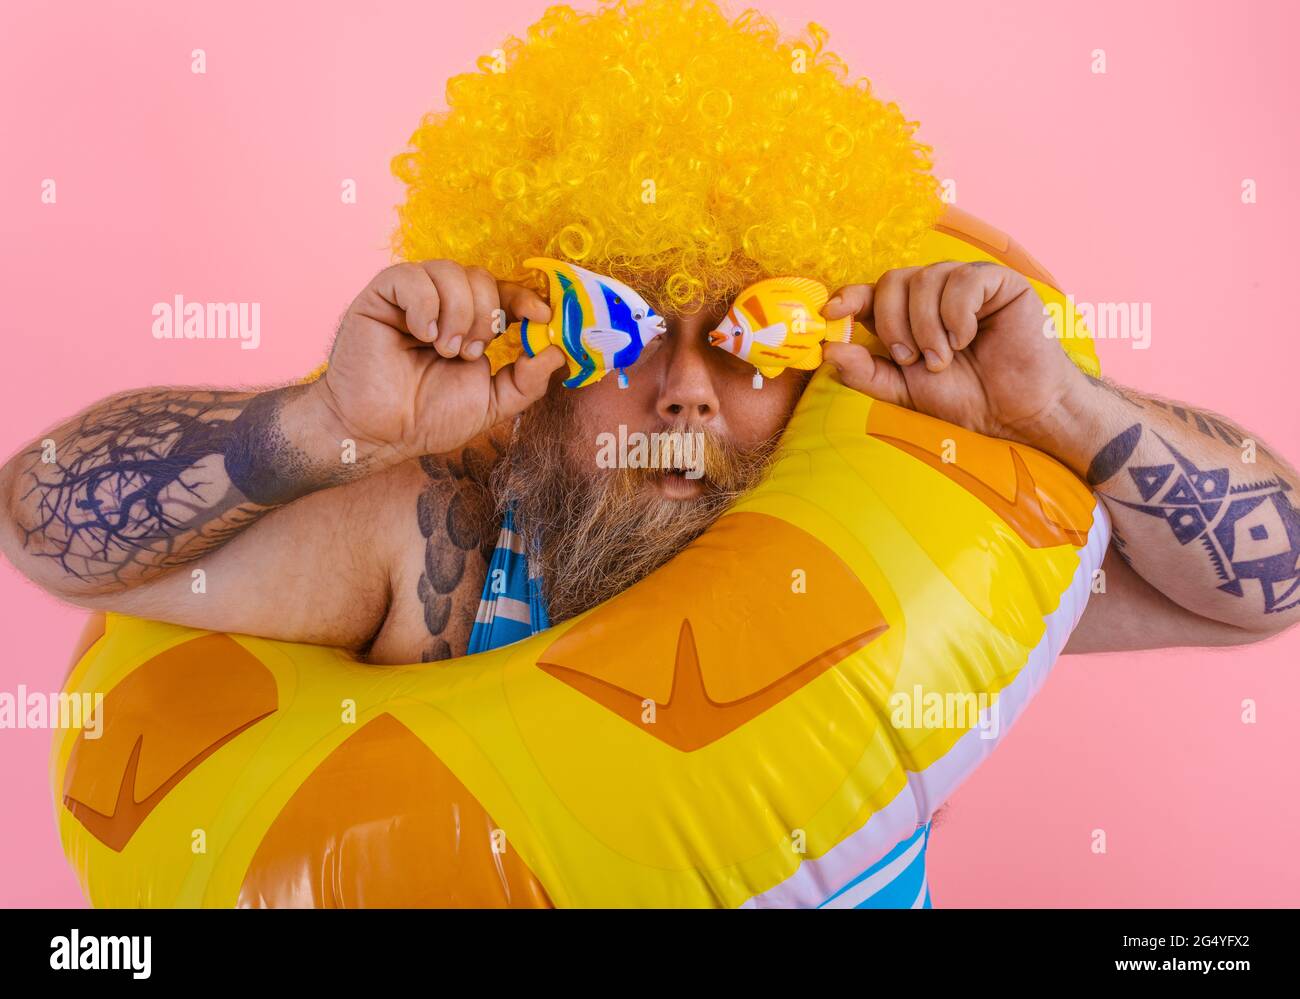 Ein fetter Mann mit Perücke im Kopf ist bereit, mit einem  Donut-Lebensretter zu schwimmen Stockfotografie - Alamy